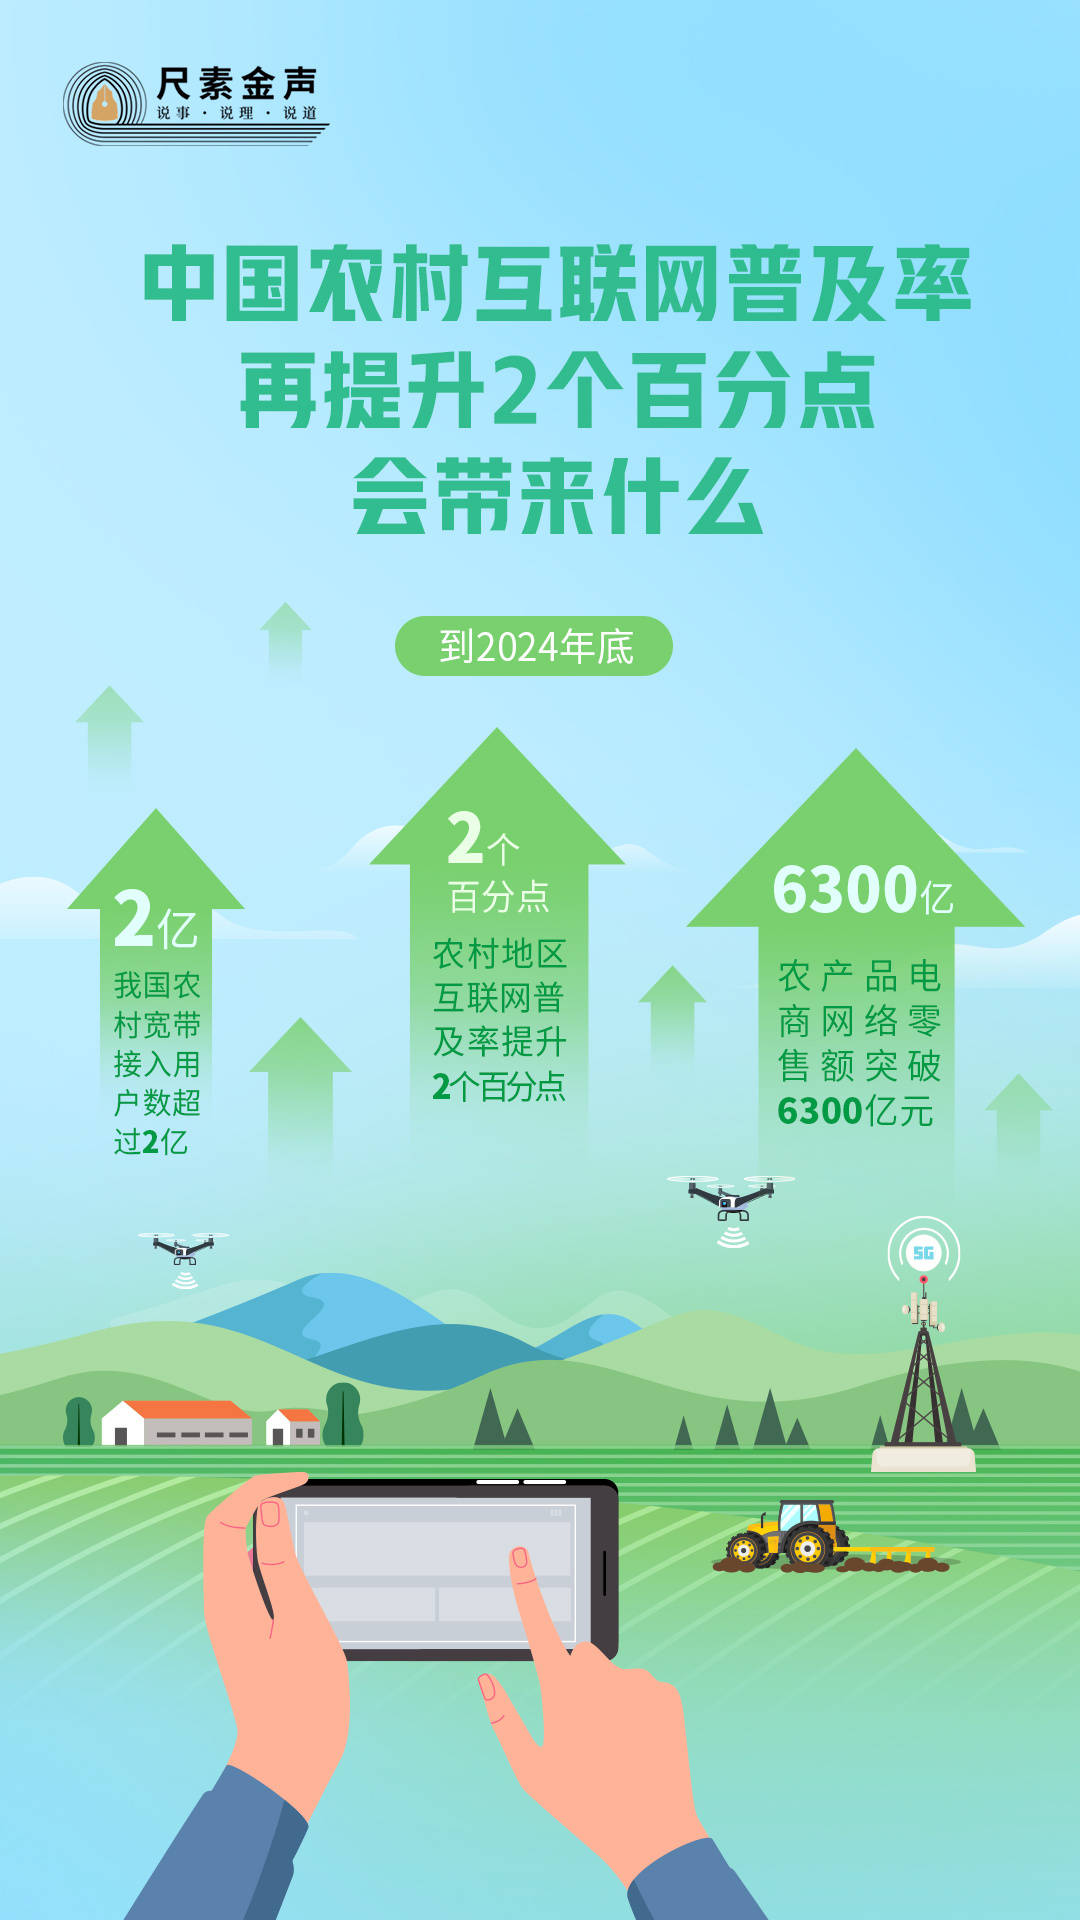 中国农村互联网普及率再提升2个百分点 尺素金声 会带来什么